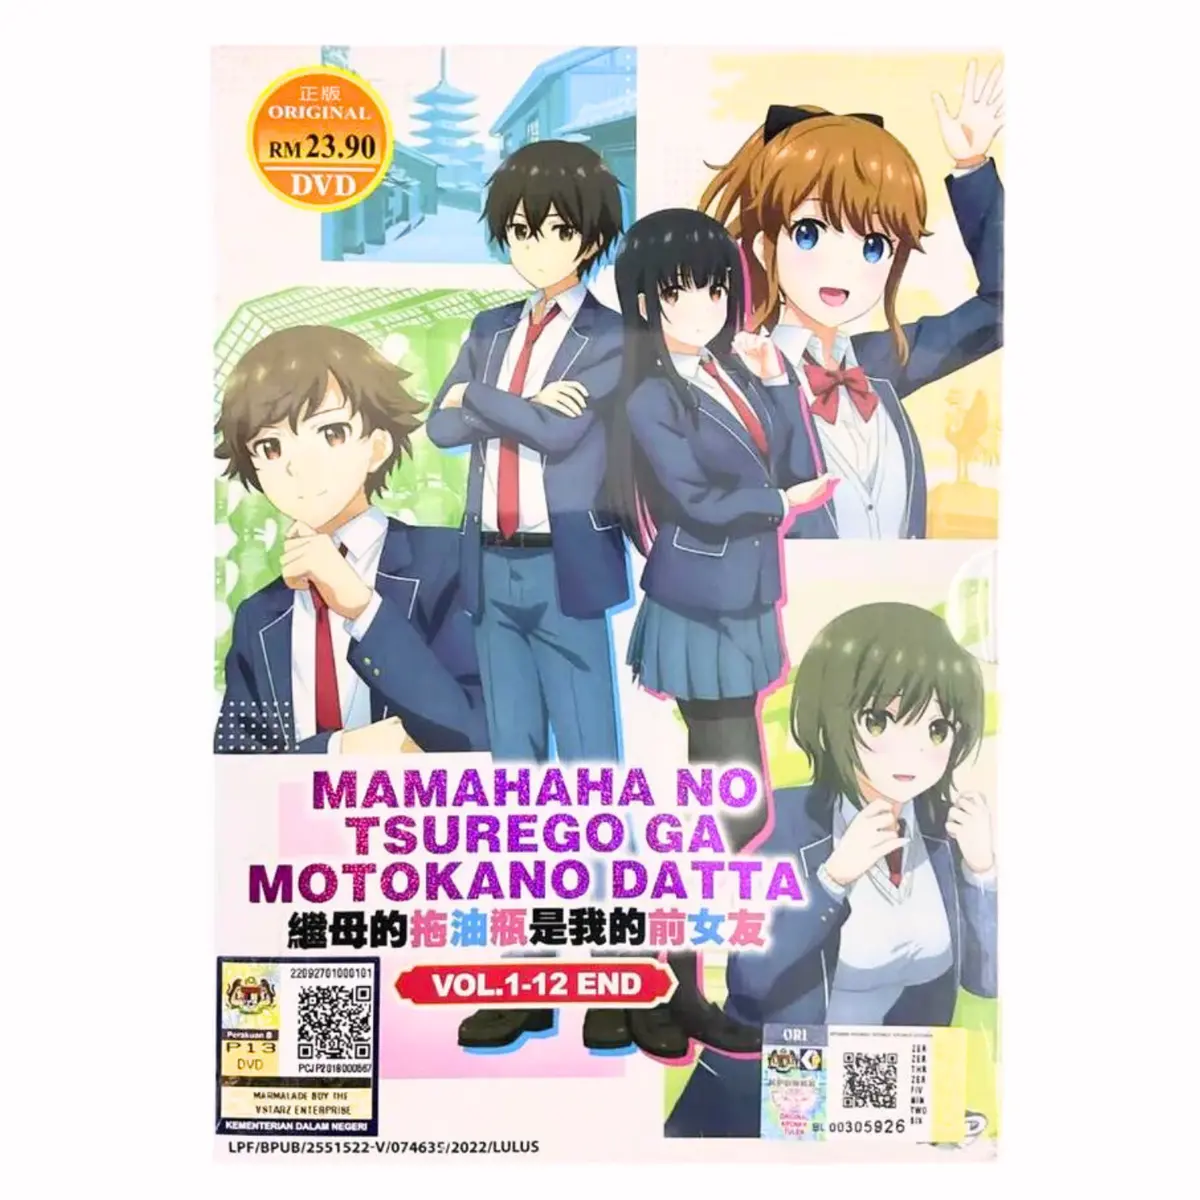 Mamahaha no Tsurego ga Motokano datta (VOL.1-12End) English Sub Free  Shipment